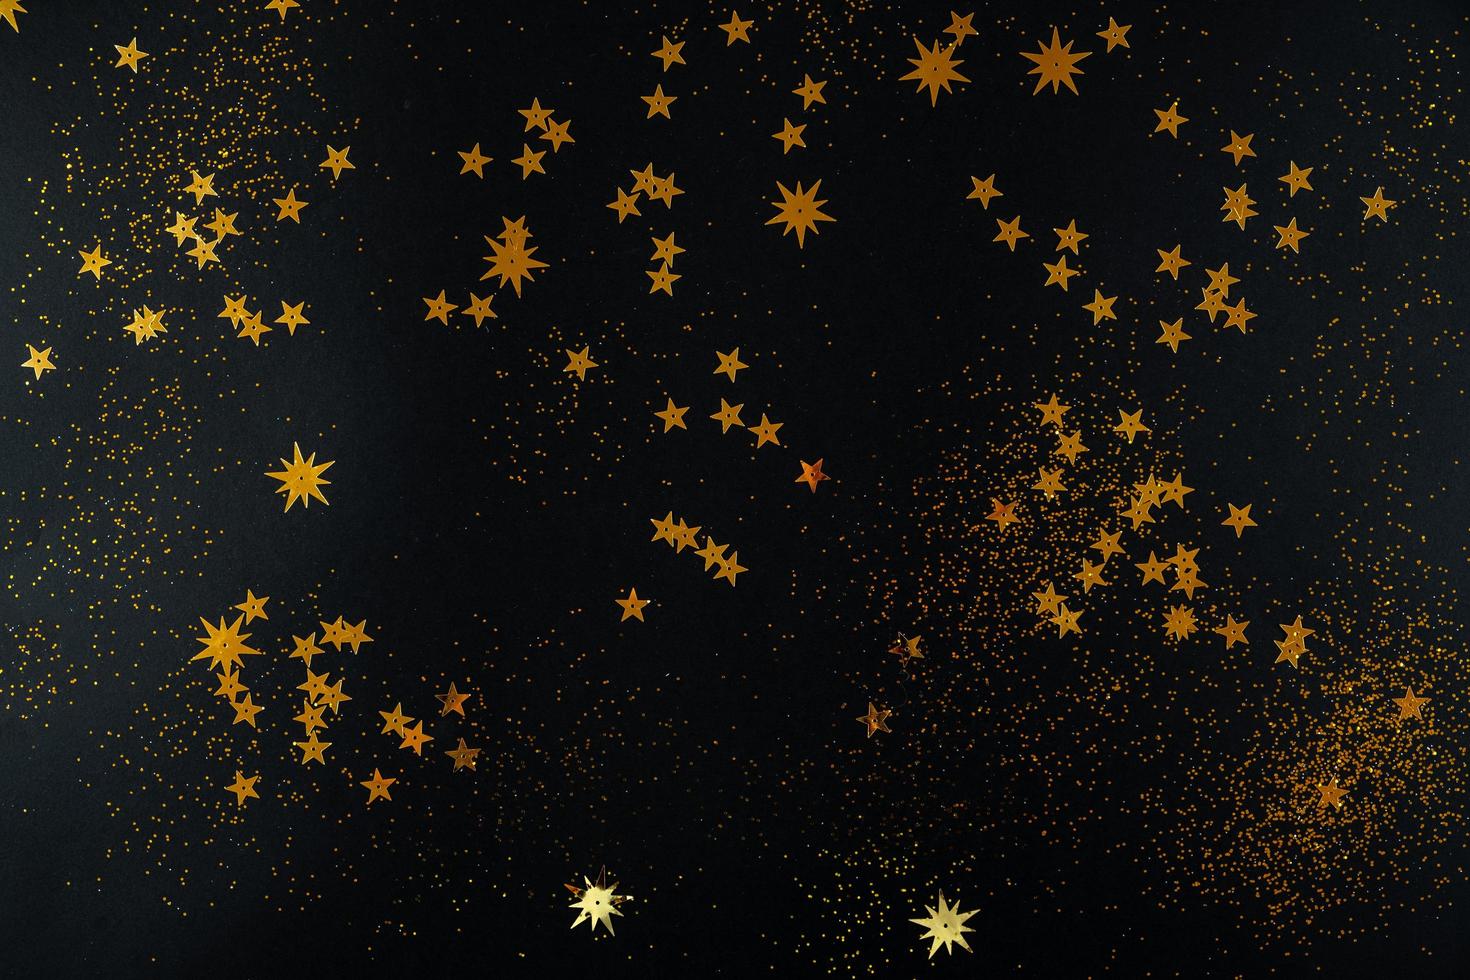 estrellas doradas sobre fondo negro. endecha plana, vista superior. foto